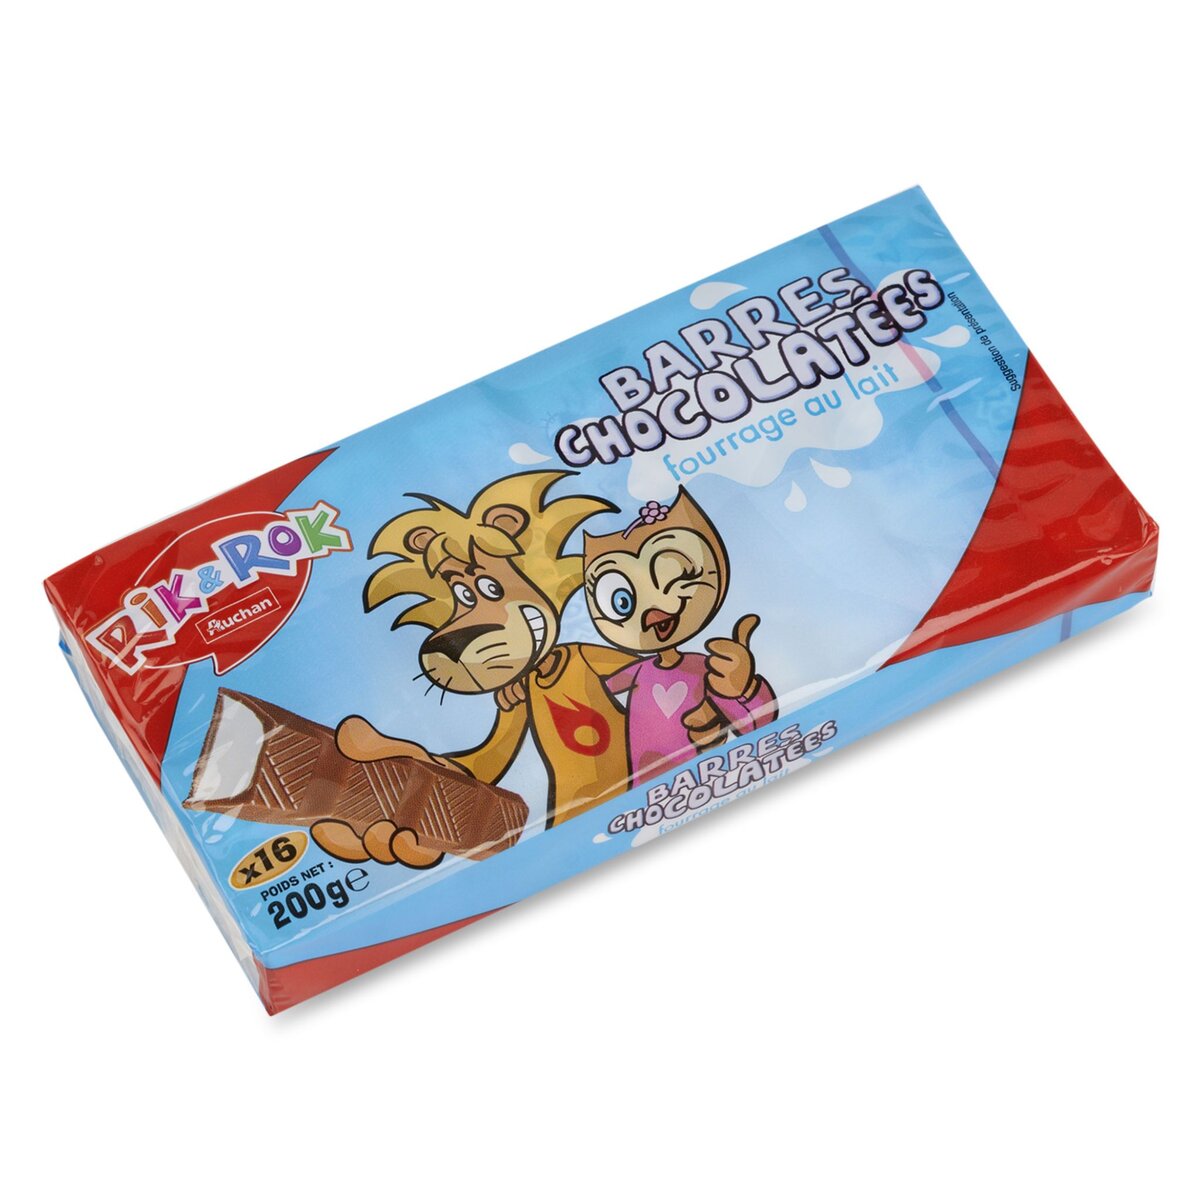 AUCHAN RIK & ROK Barres chocolatées fourrées au lait 16 barres 200g